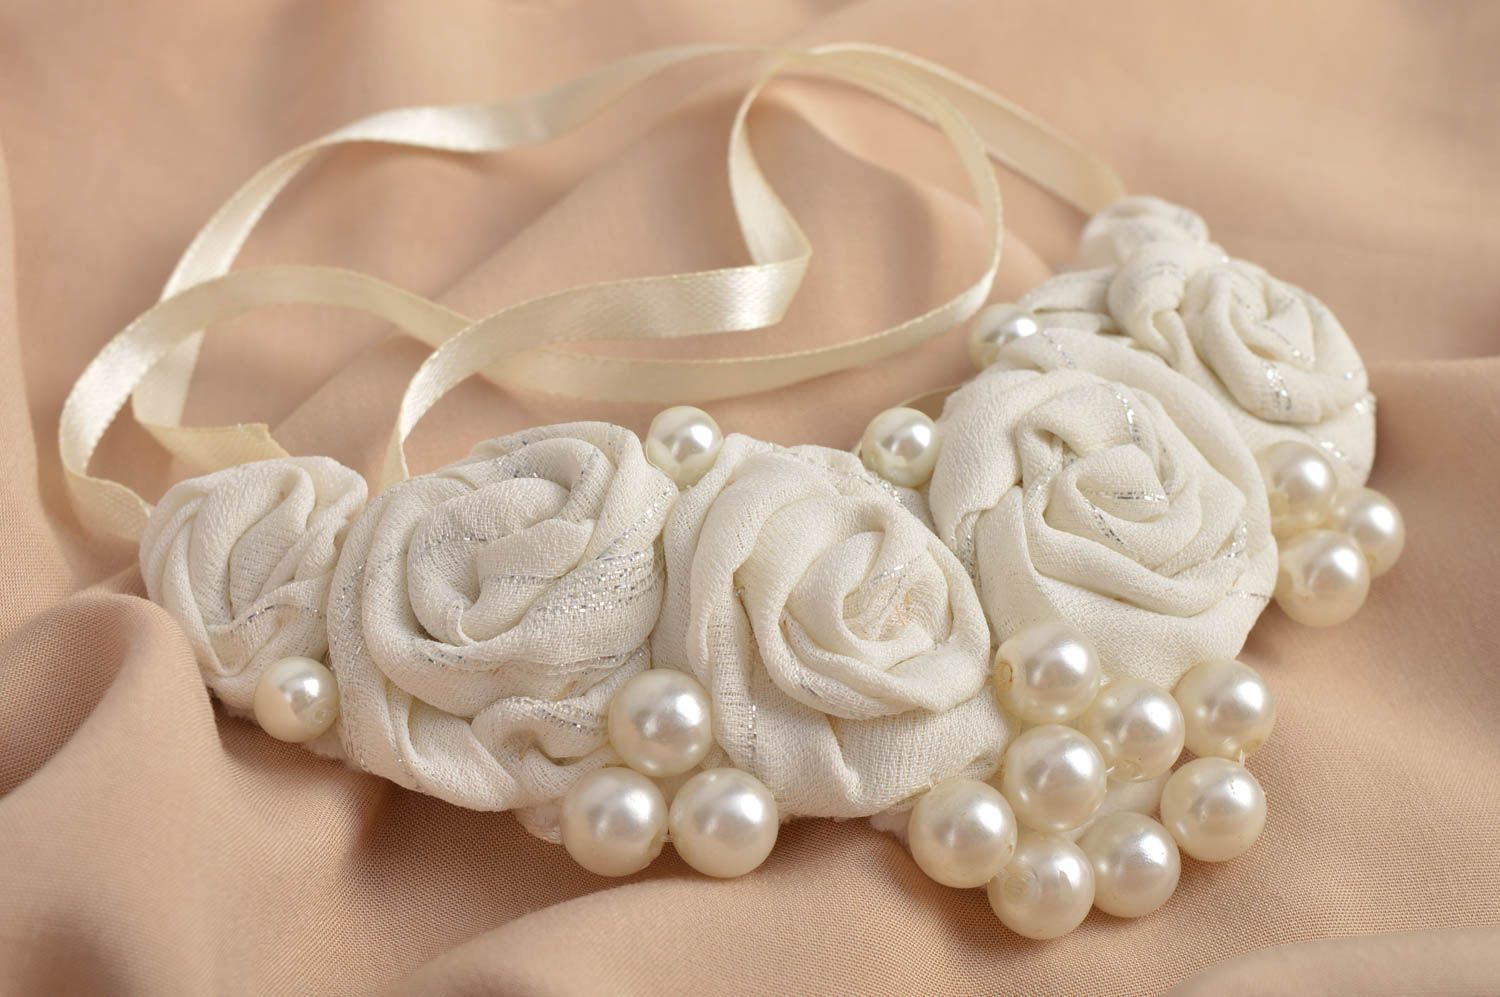 Collier textile Bijou fait main blanc perles fantaisie Accessoire femme photo 1